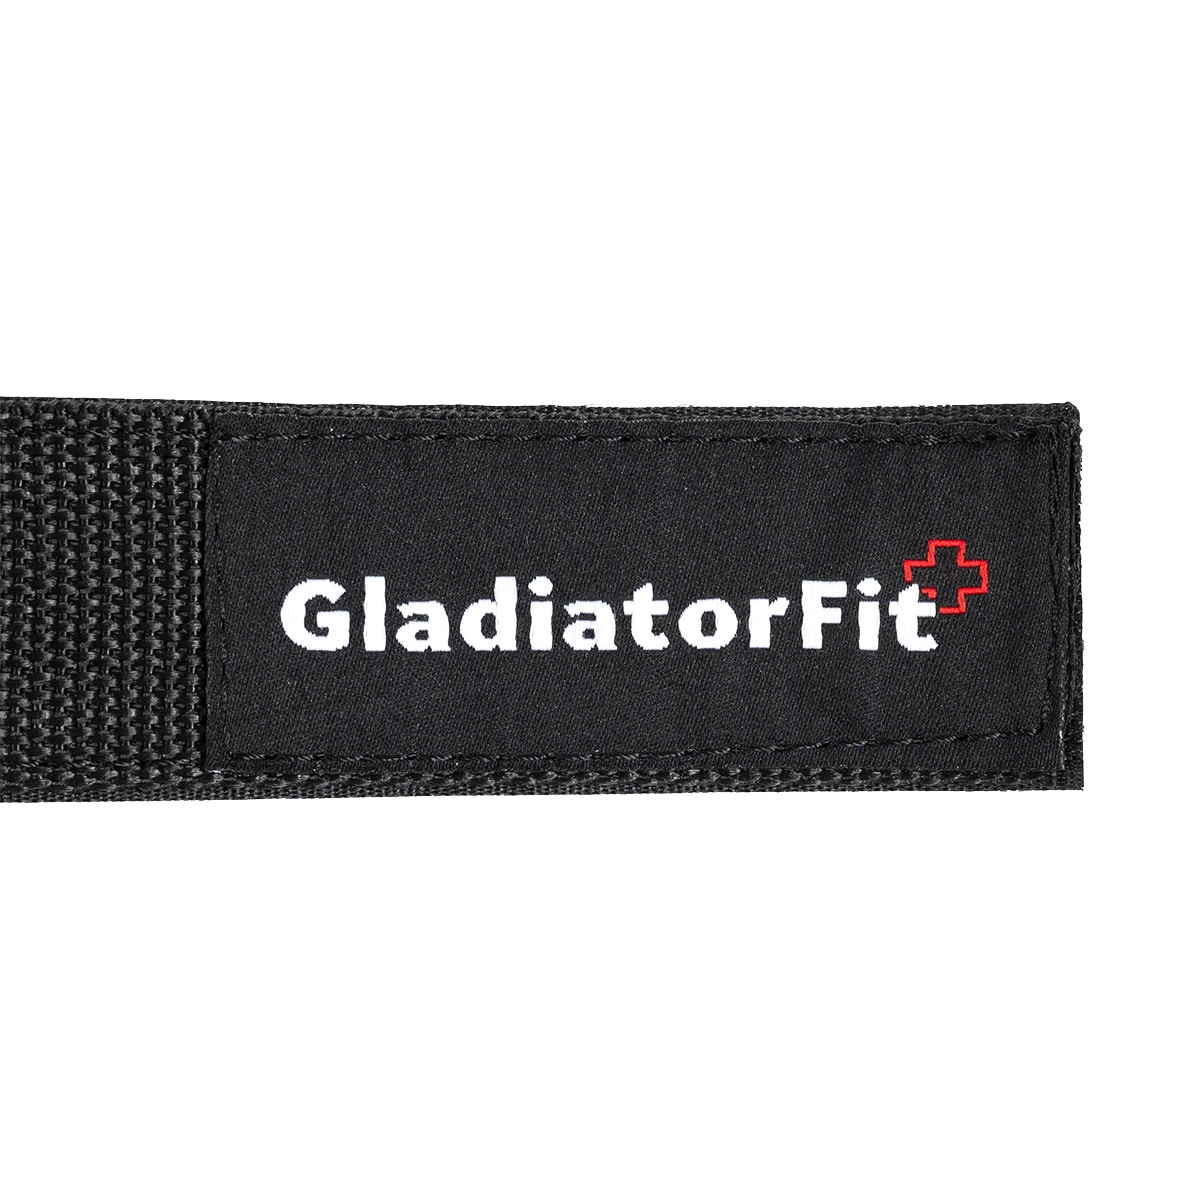 Sangles de levage / tirage lifting straps musculation (lot de 2), GladiatorFit